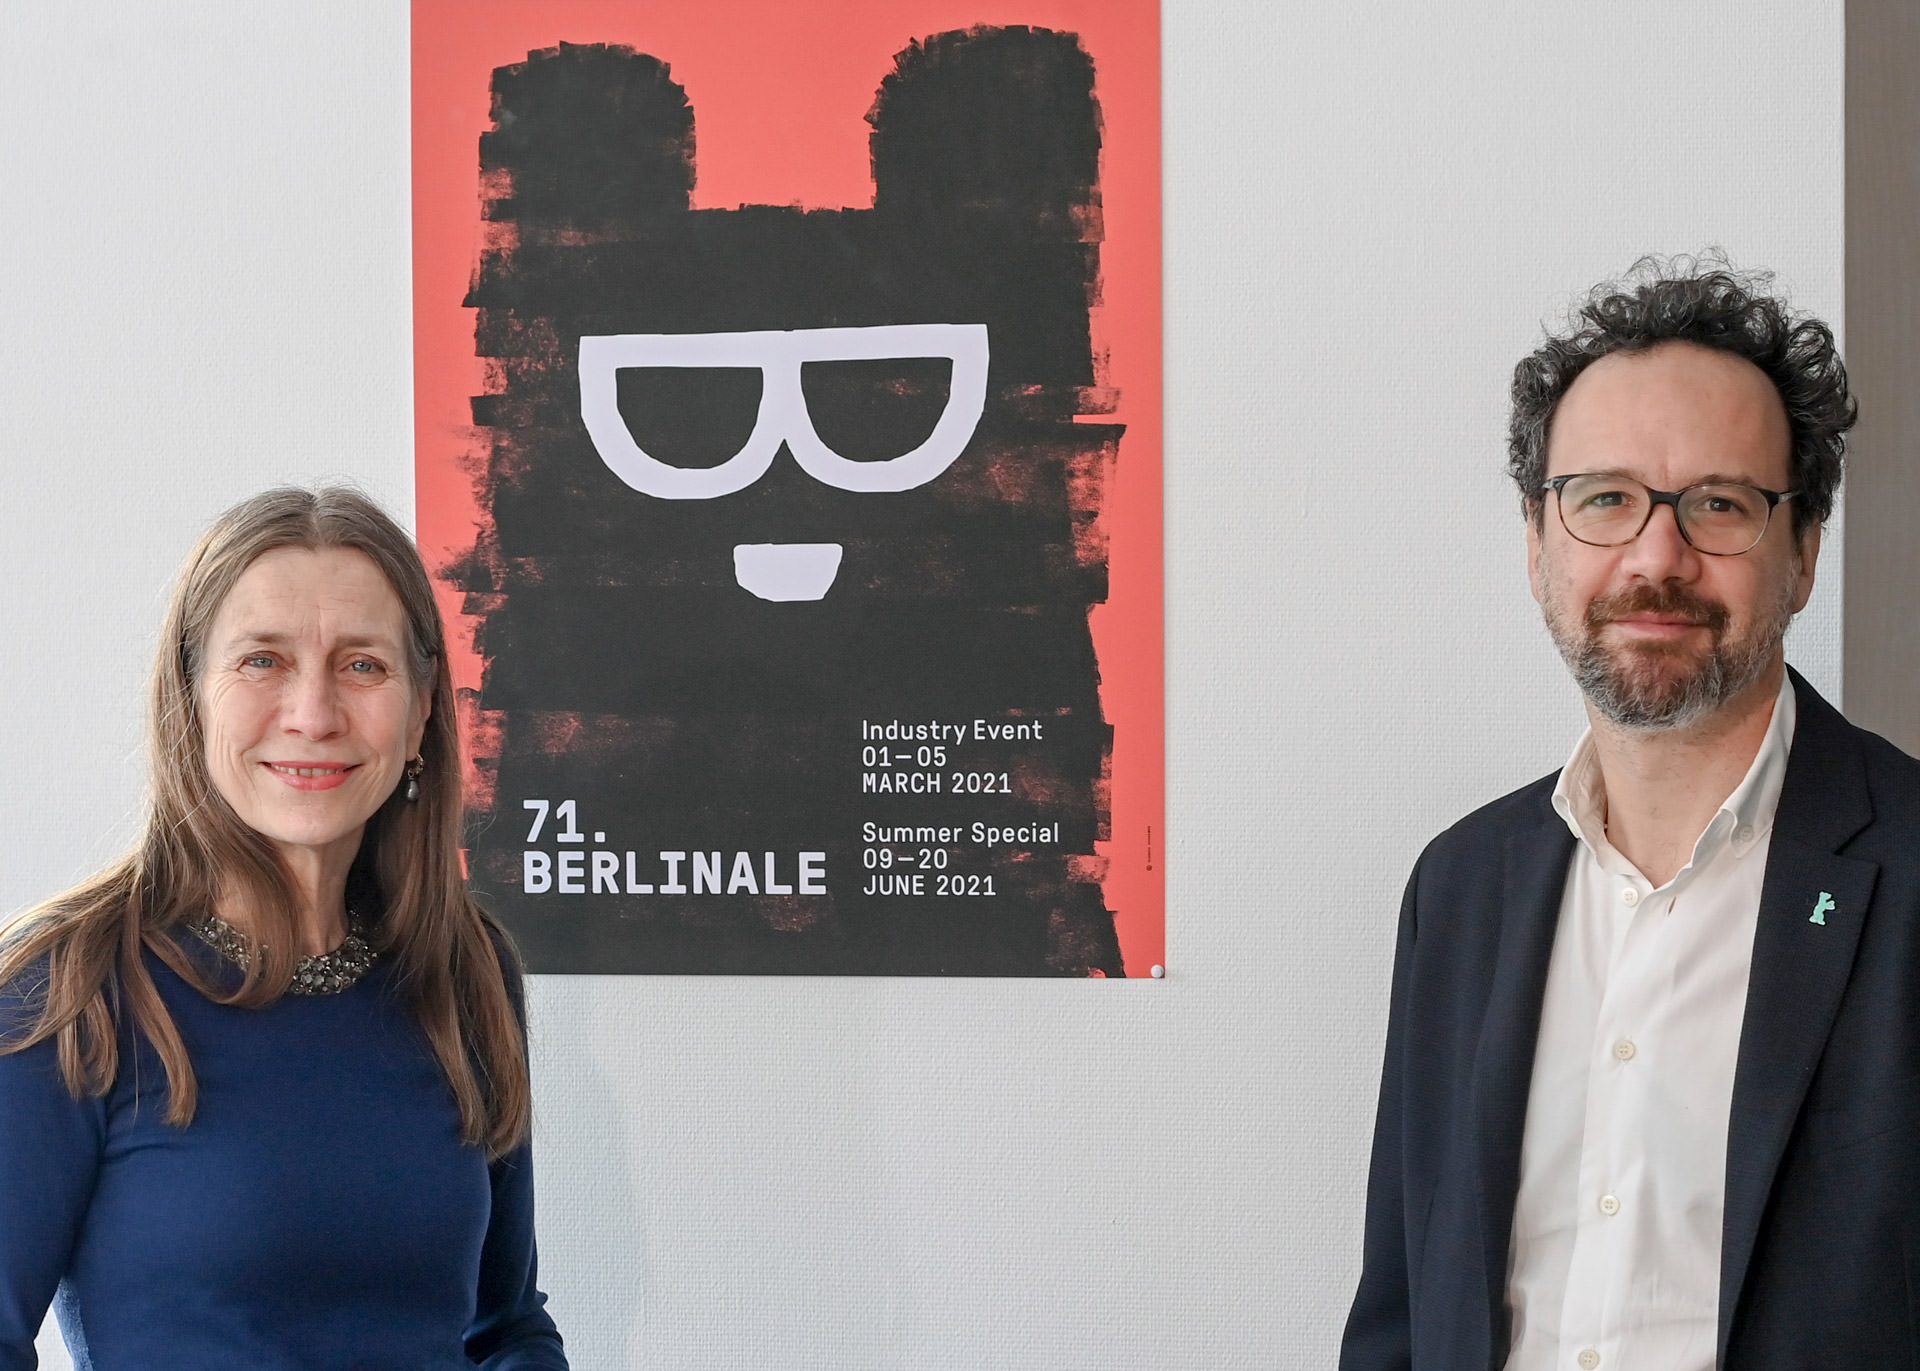 کارلو چاتریان و ماریت ریزنبیک در کنار پوستر جشنواره فیلم برلین ۲۰۲۱